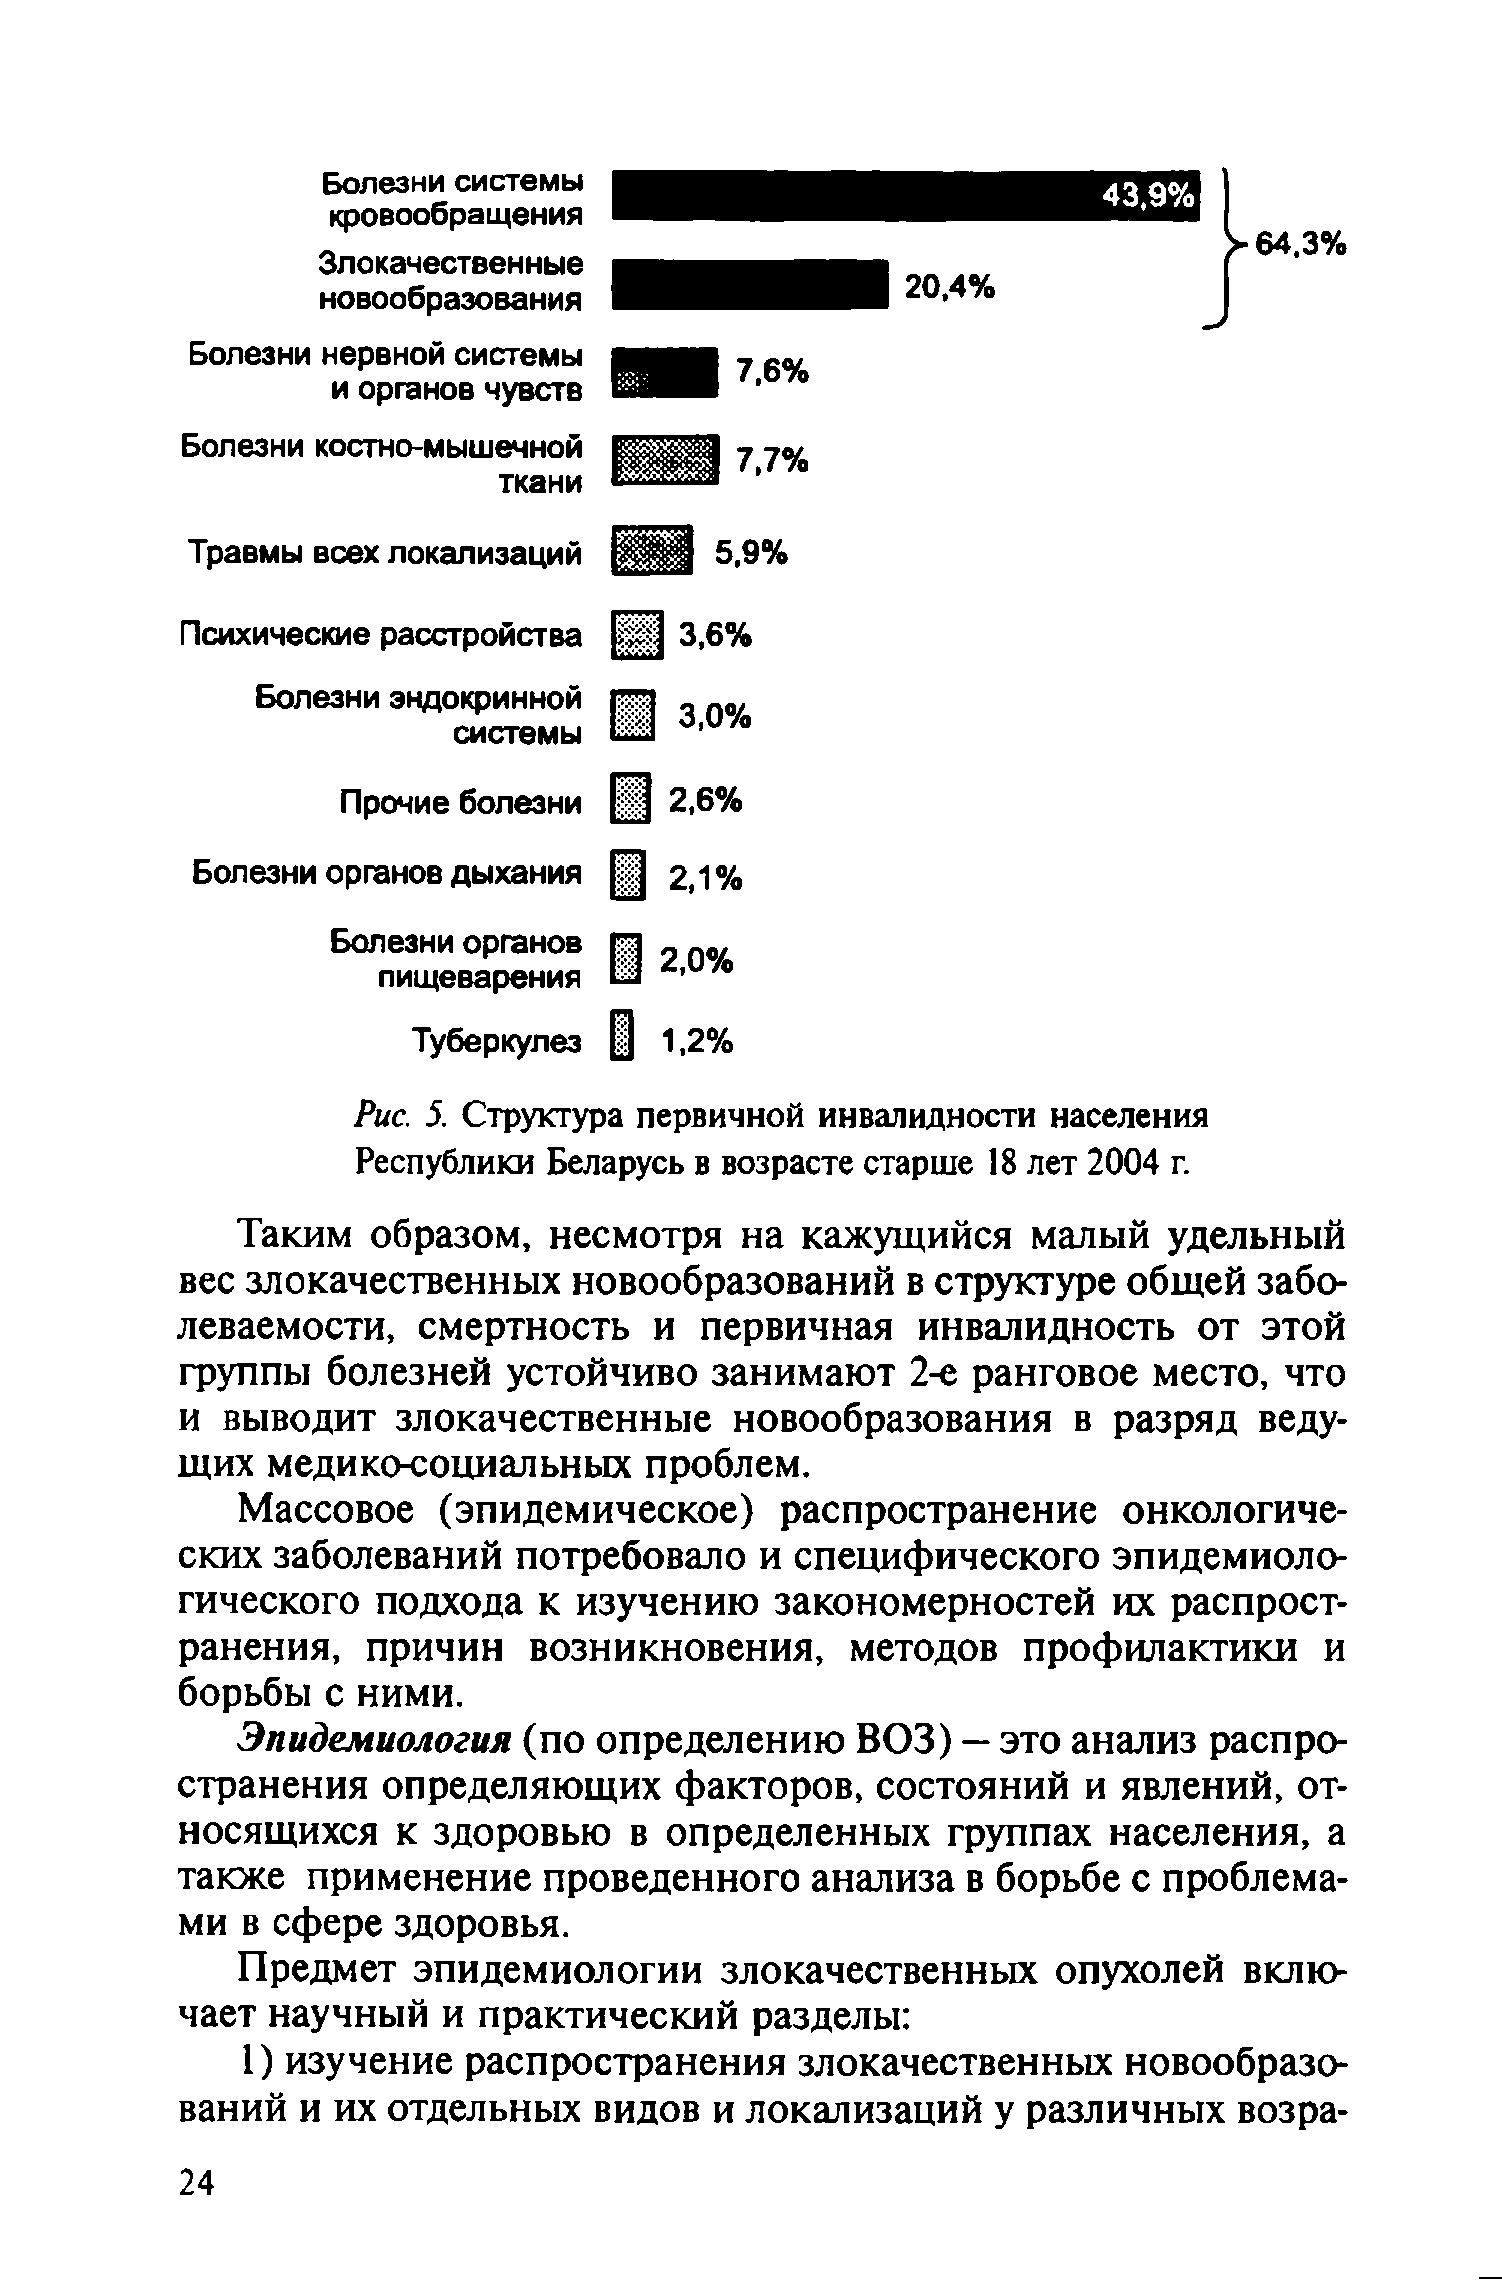 Рис. 5. Структура первичной инвалидности населения Республики Беларусь в возрасте старше 18 лет 2004 г.